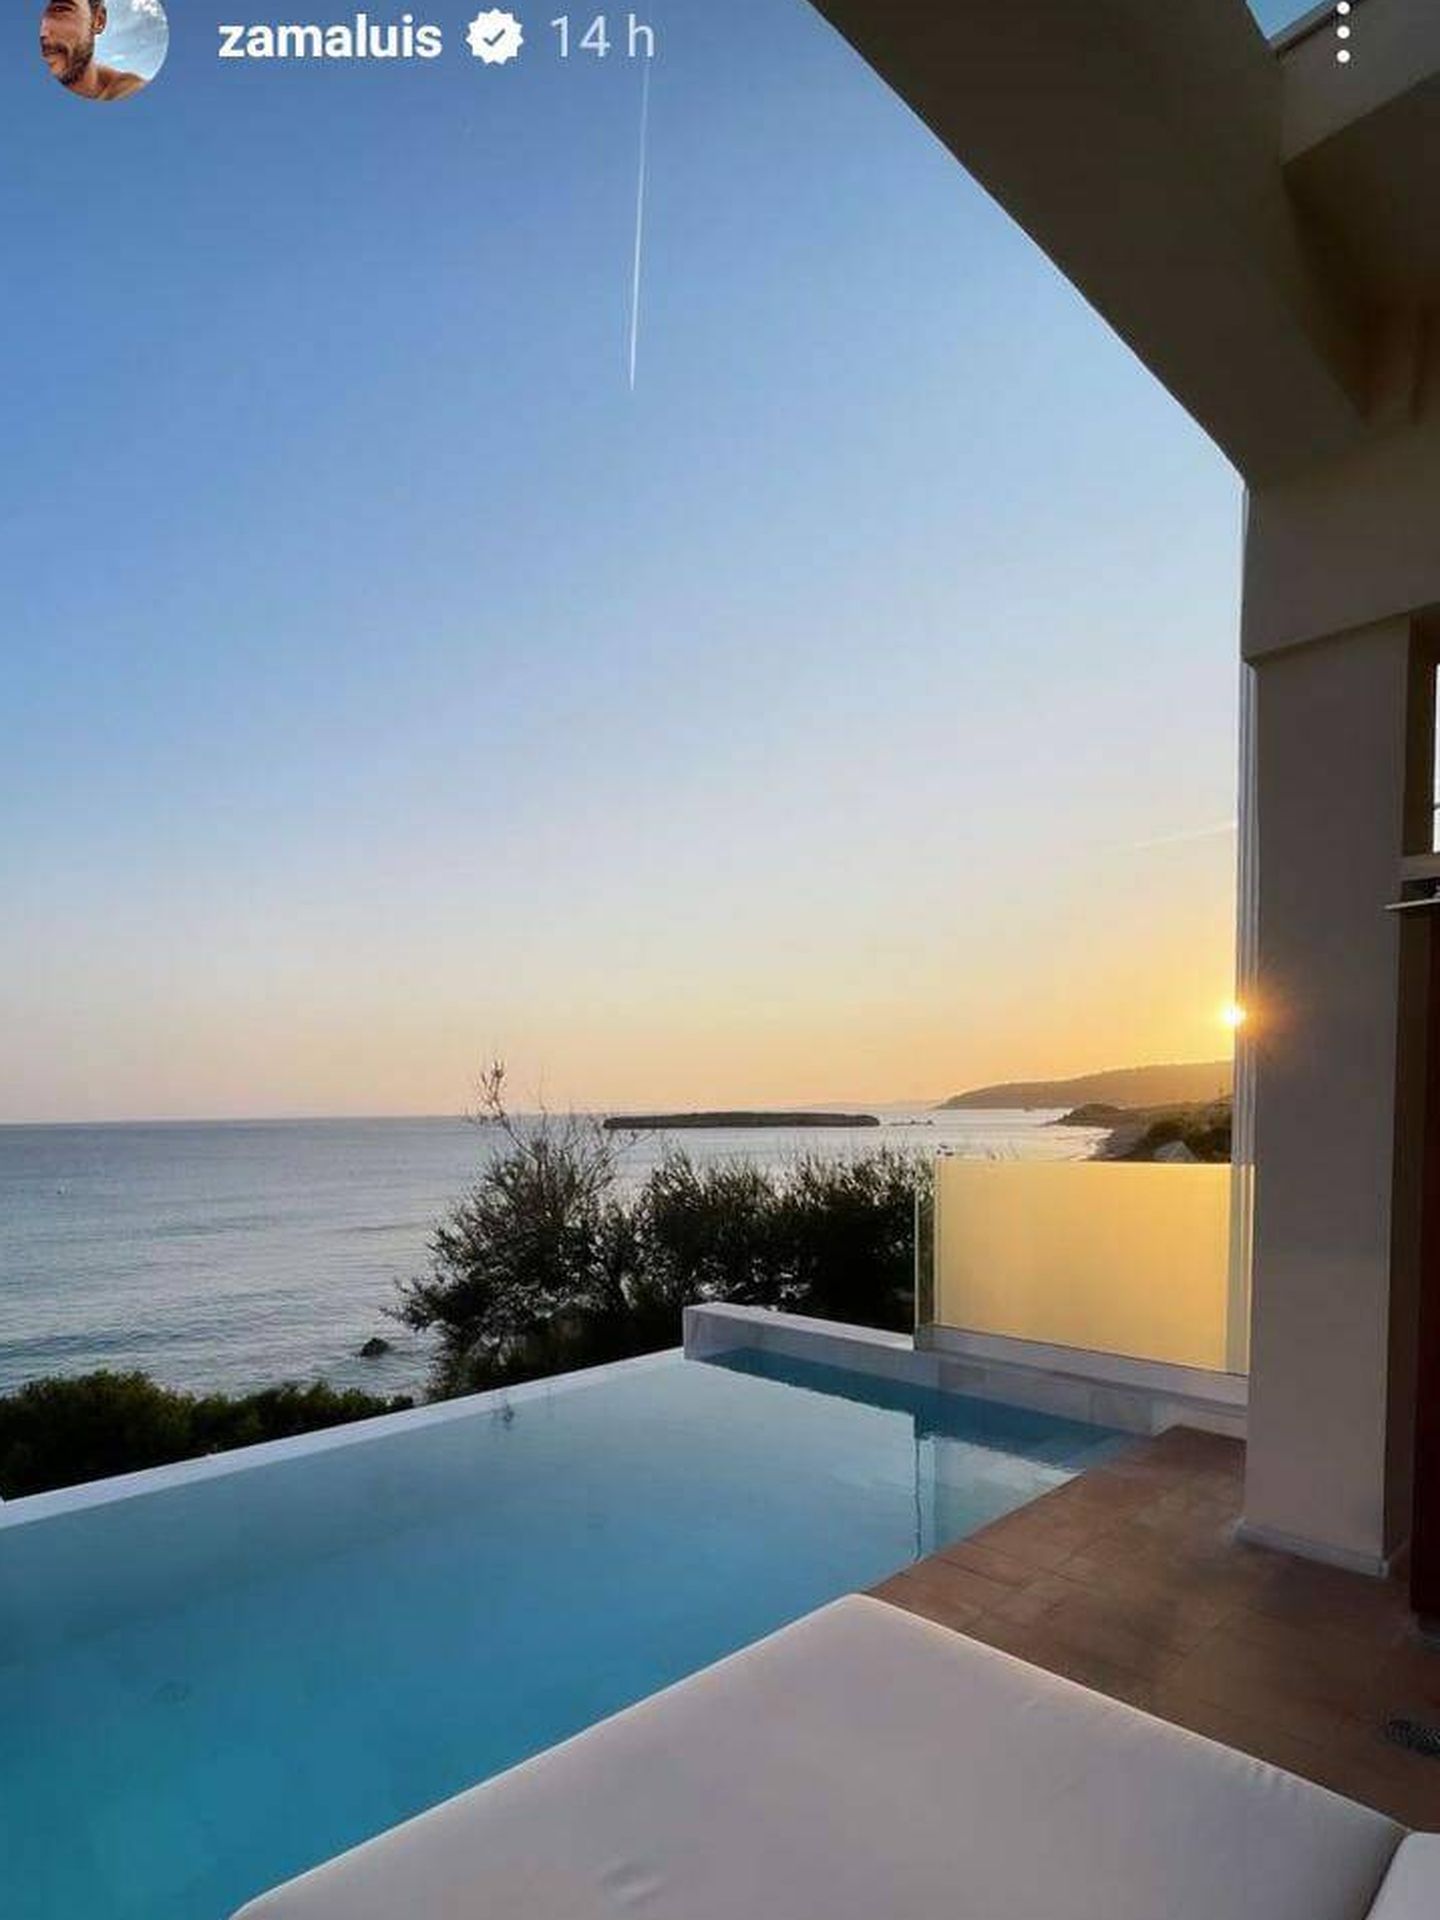 Marta Pombo y Luis Zamalloa disfrutan de estas vistas y piscina en su habitación de hotel en Menorca. (Instagram/@mpombor)